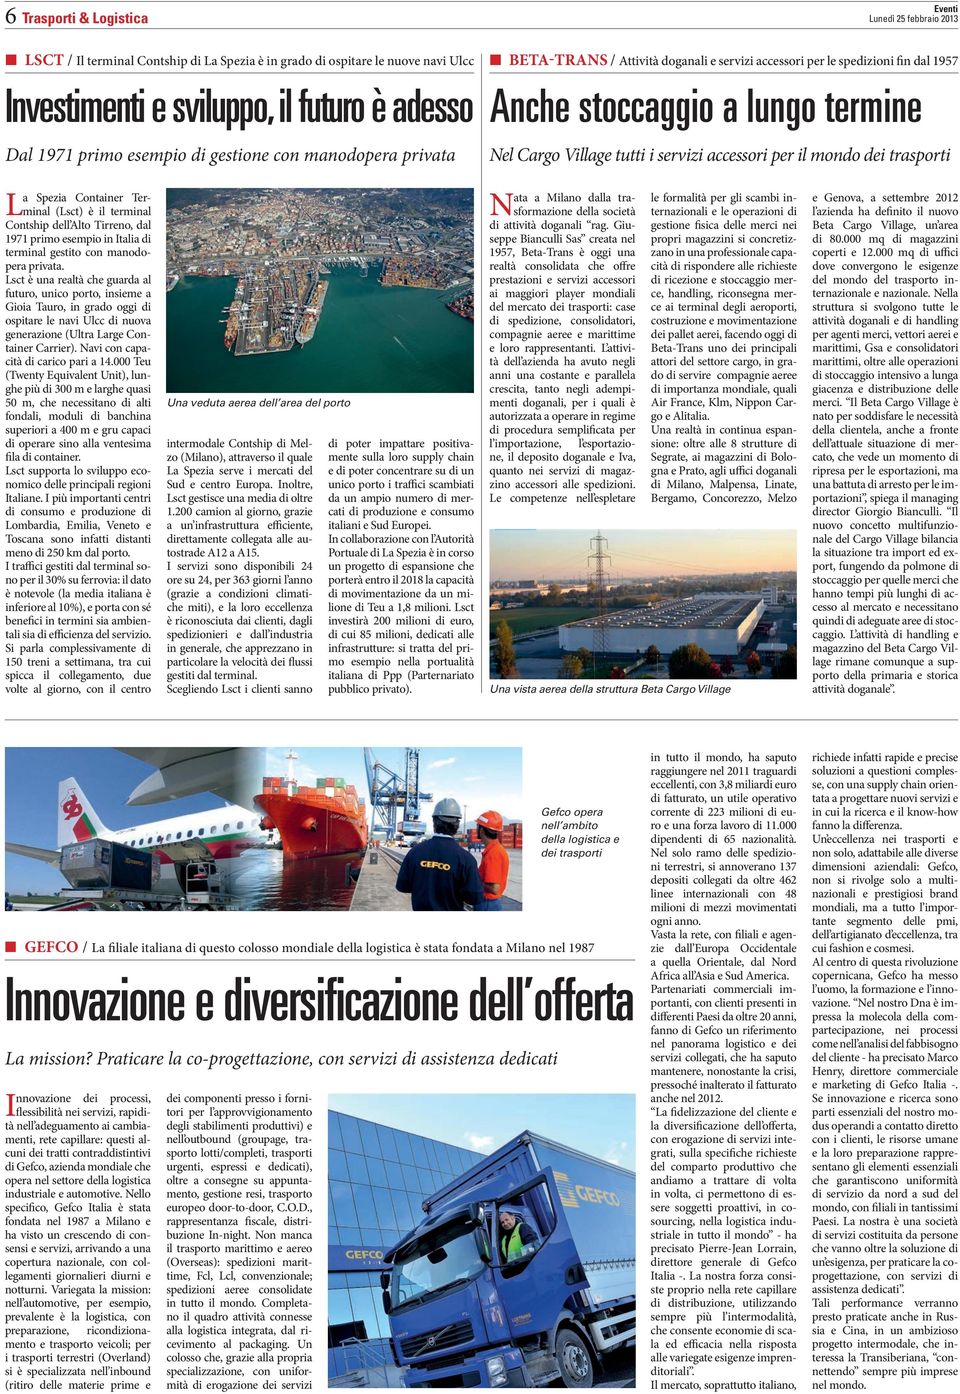 trasporti La Spezia Container Terminal (Lsct) è il terminal Contship dell Alto Tirreno, dal 1971 primo esempio in Italia di terminal gestito con manodopera privata.